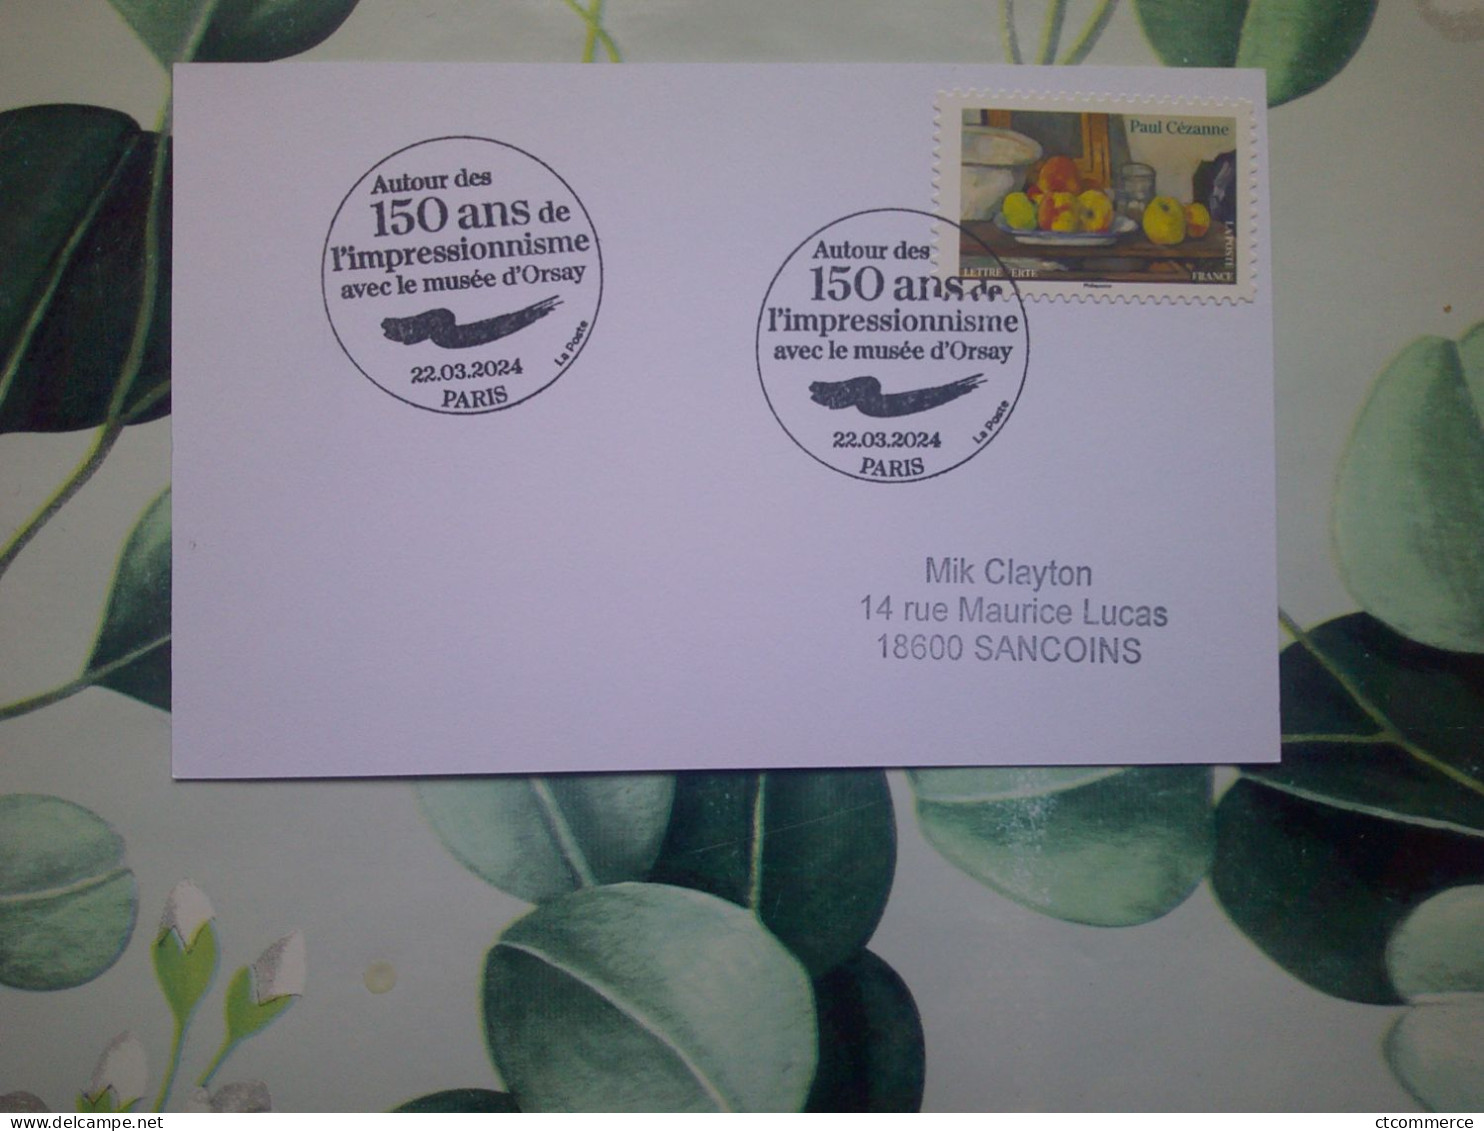 12 cartes FDC 22.03.24  1 timbres autour des 150 ans de l'impressionnisme avec le musée d'Orsay